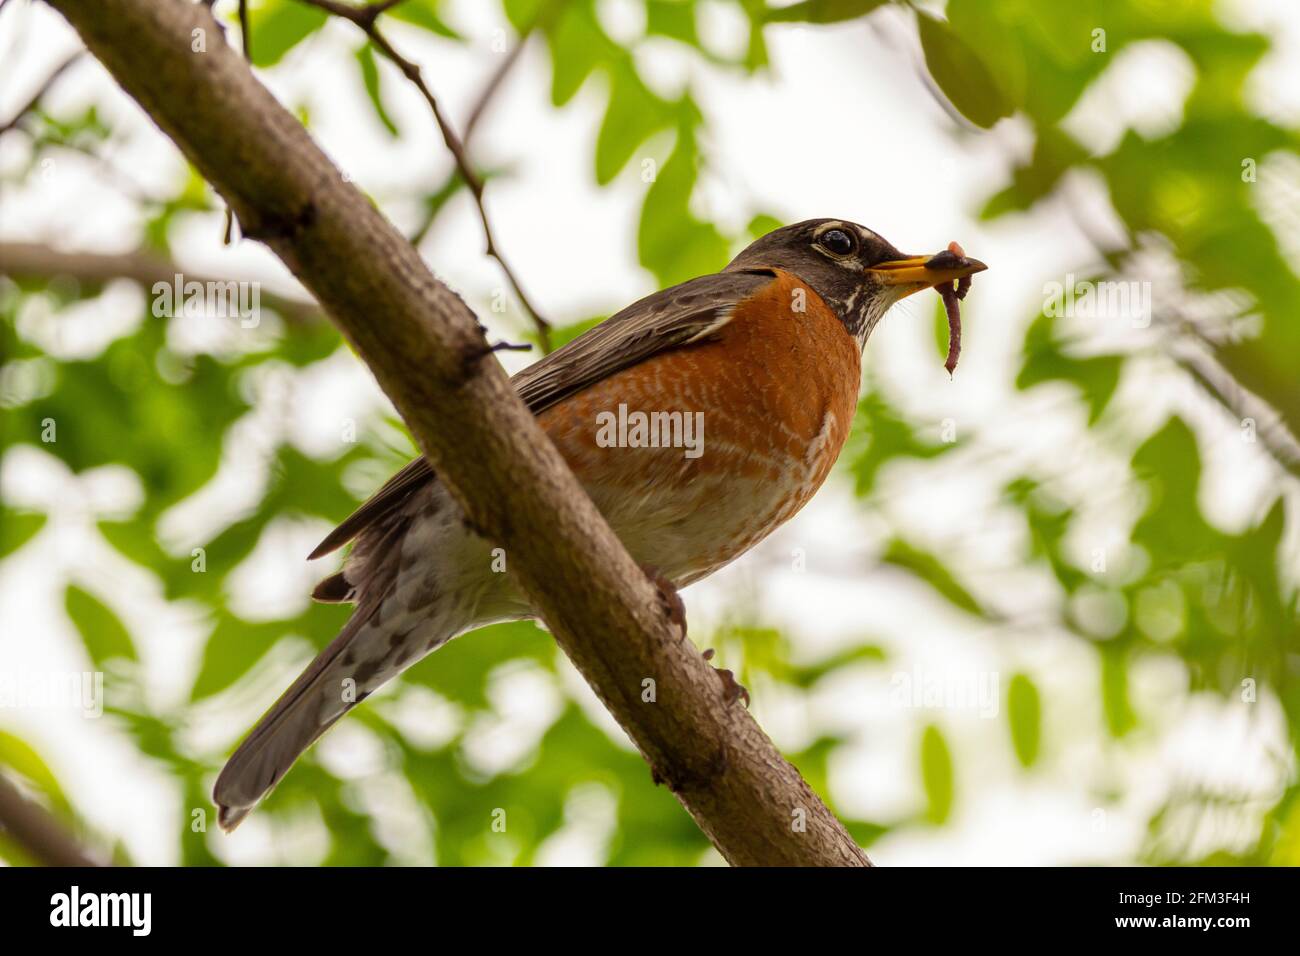 Image de gros plan à faible angle d'une sous-espèce de Robin de l'est de Robin des Bois (Turdus migratorius) perching sur une branche d'arbre tenant un ver de terre dedans son b Banque D'Images